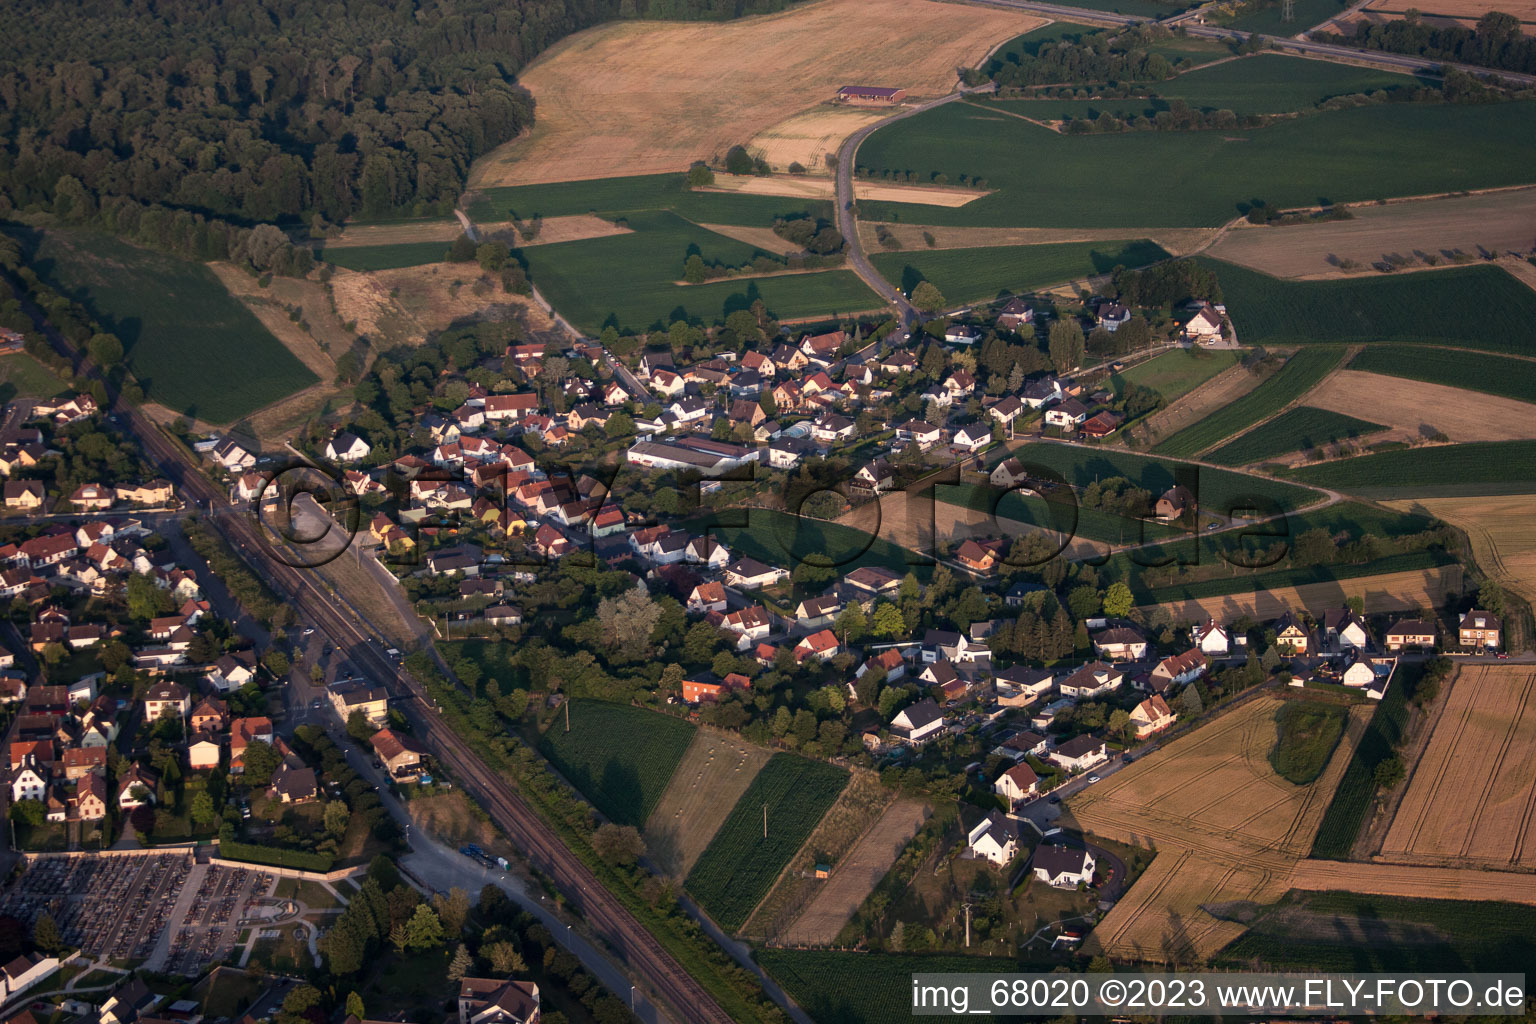 Drusenheim dans le département Bas Rhin, France vu d'un drone